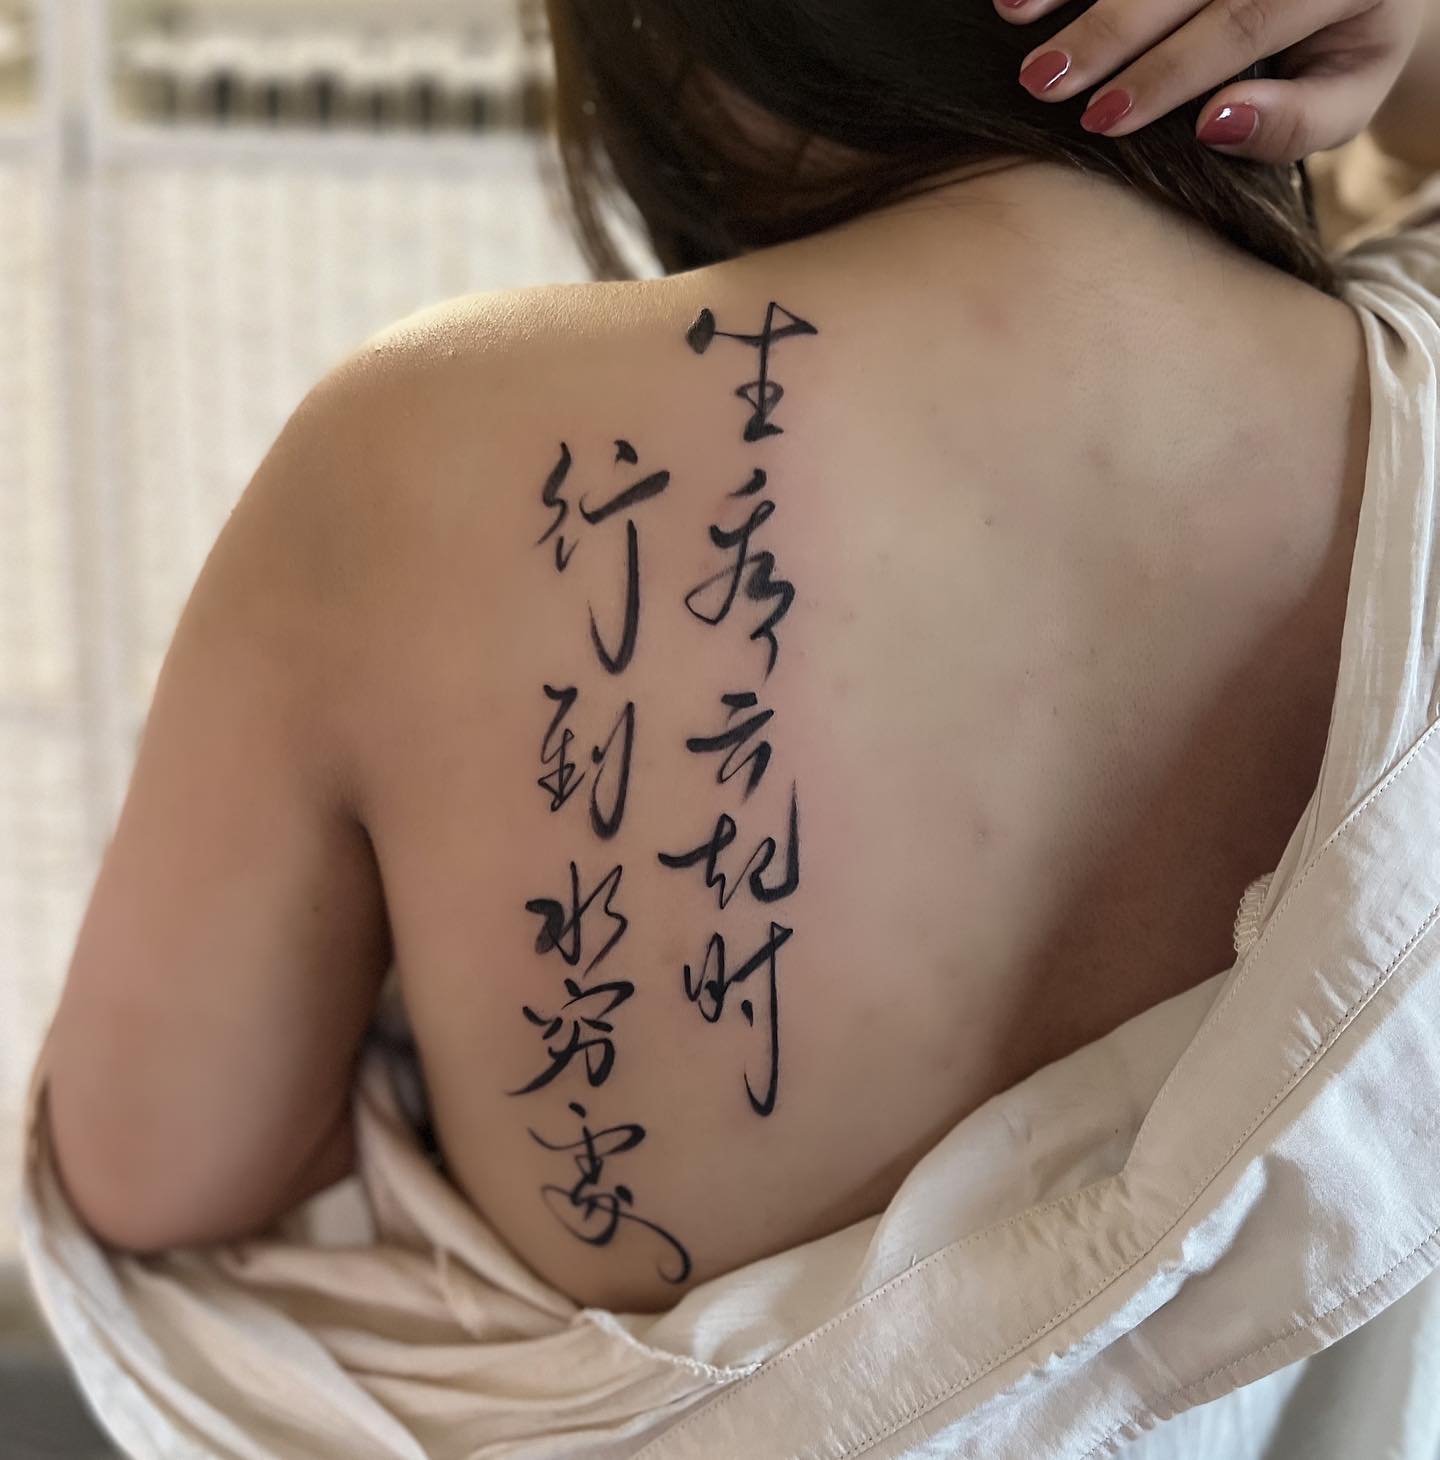 Tatuaje de espalda de poesía china.